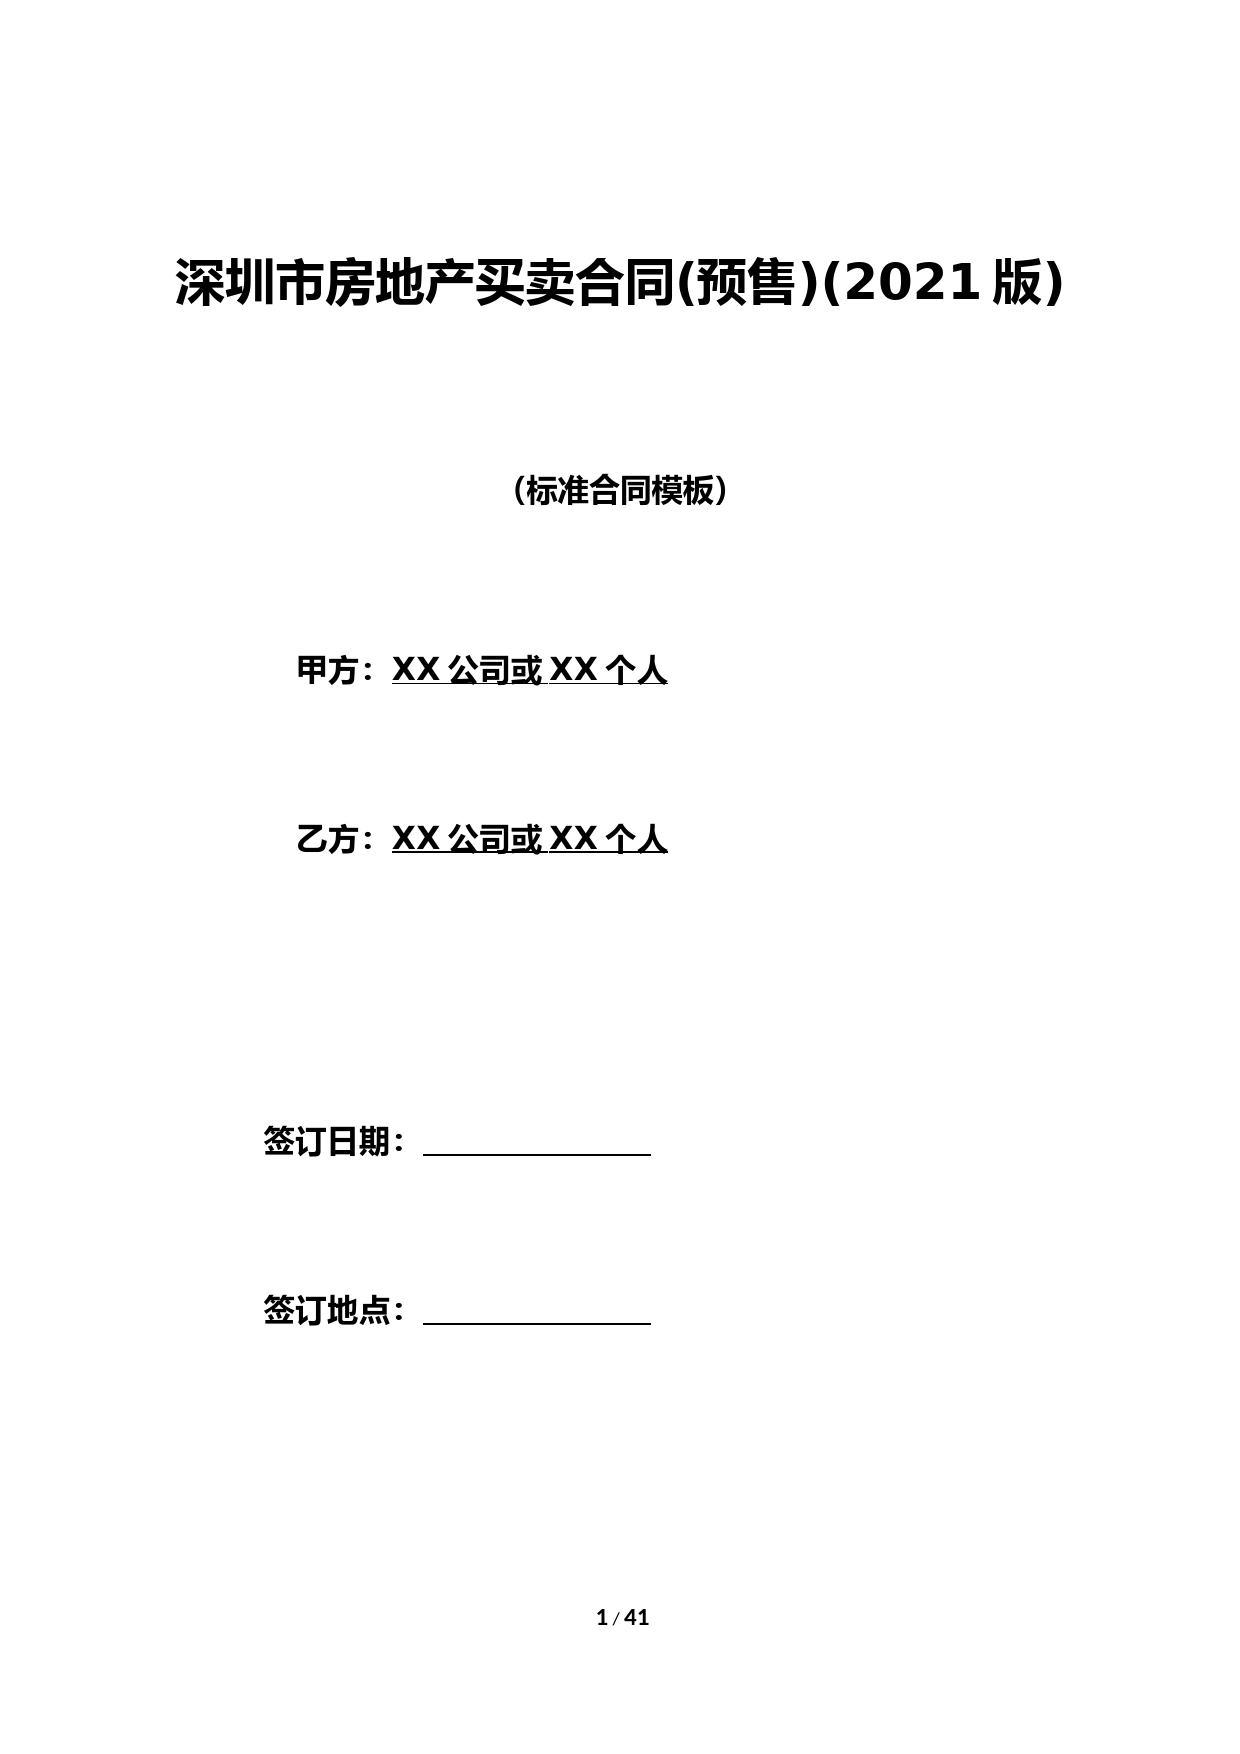 深圳市房地产买卖合同(预售)(2021版) (2)